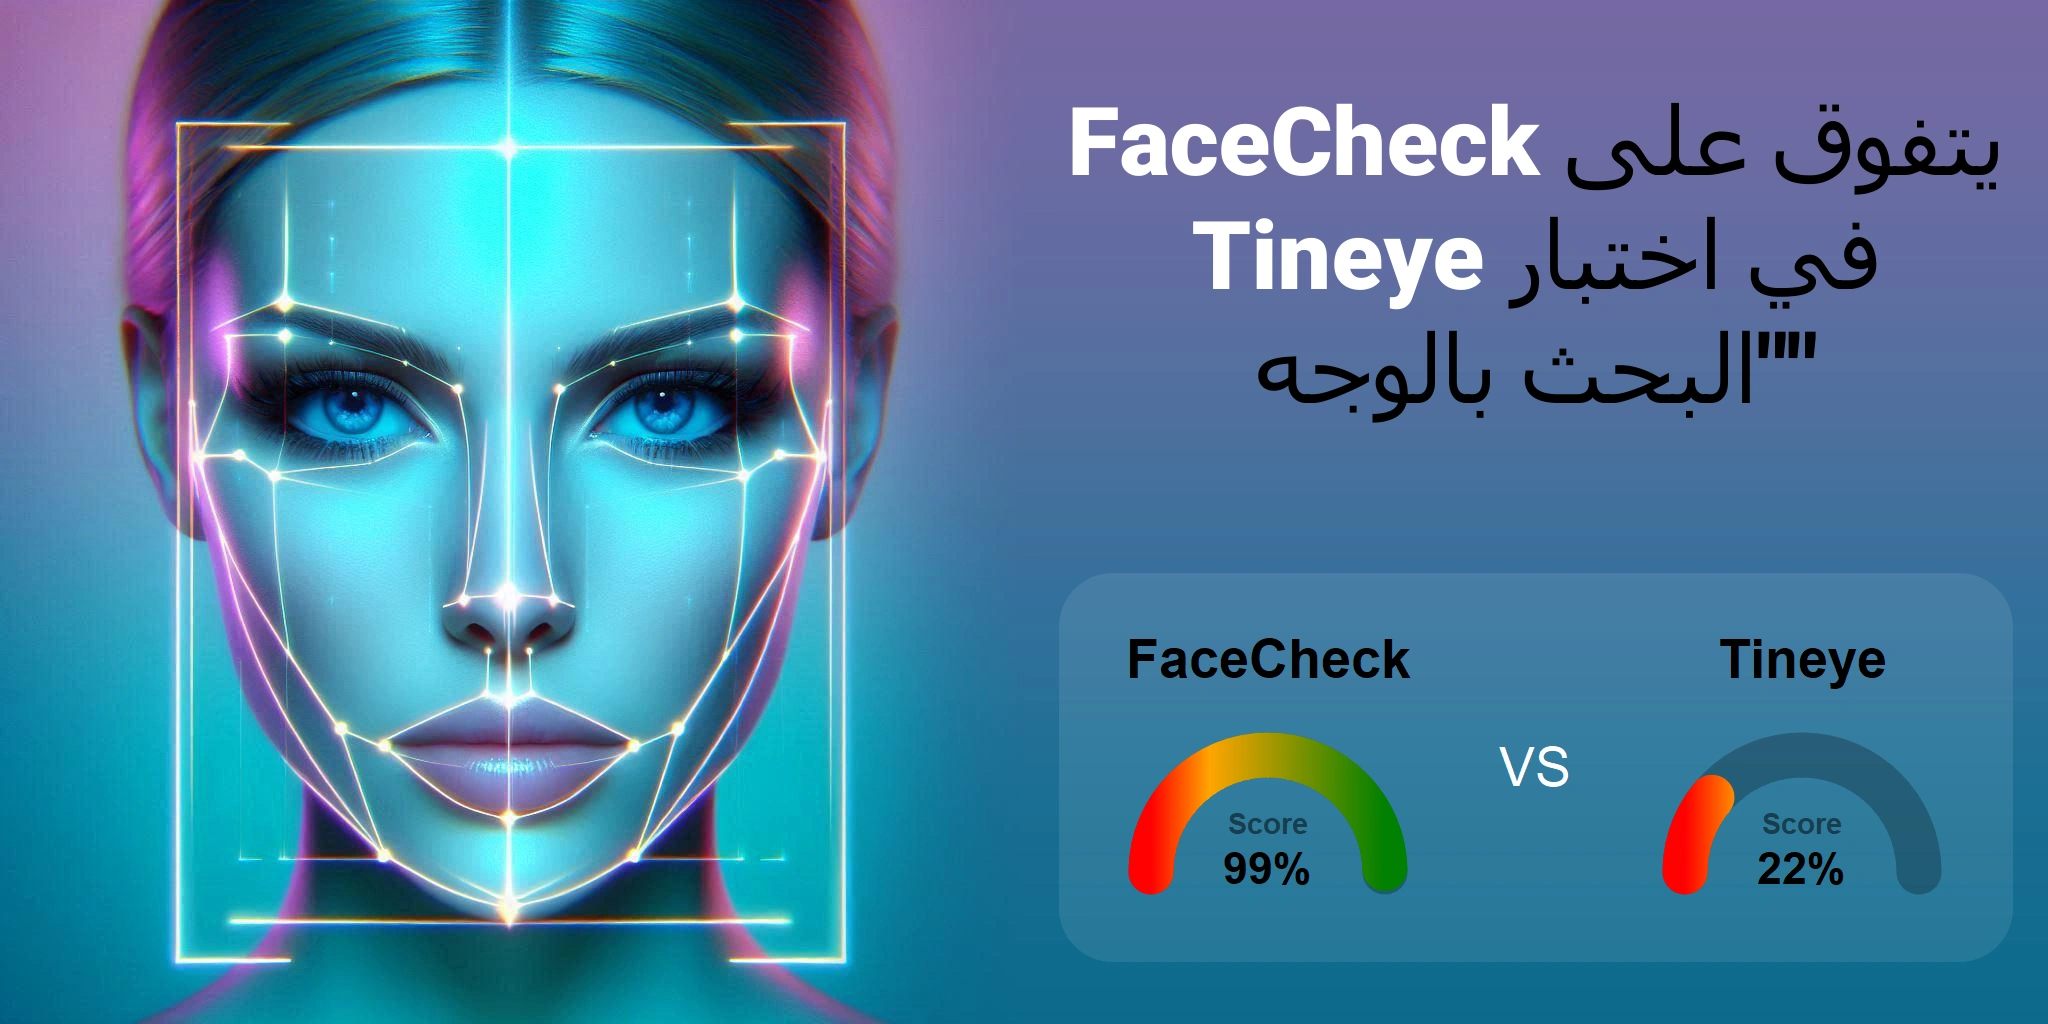 ما هو الأفضل للبحث بالوجه: <br>FaceCheck أو Tineye؟